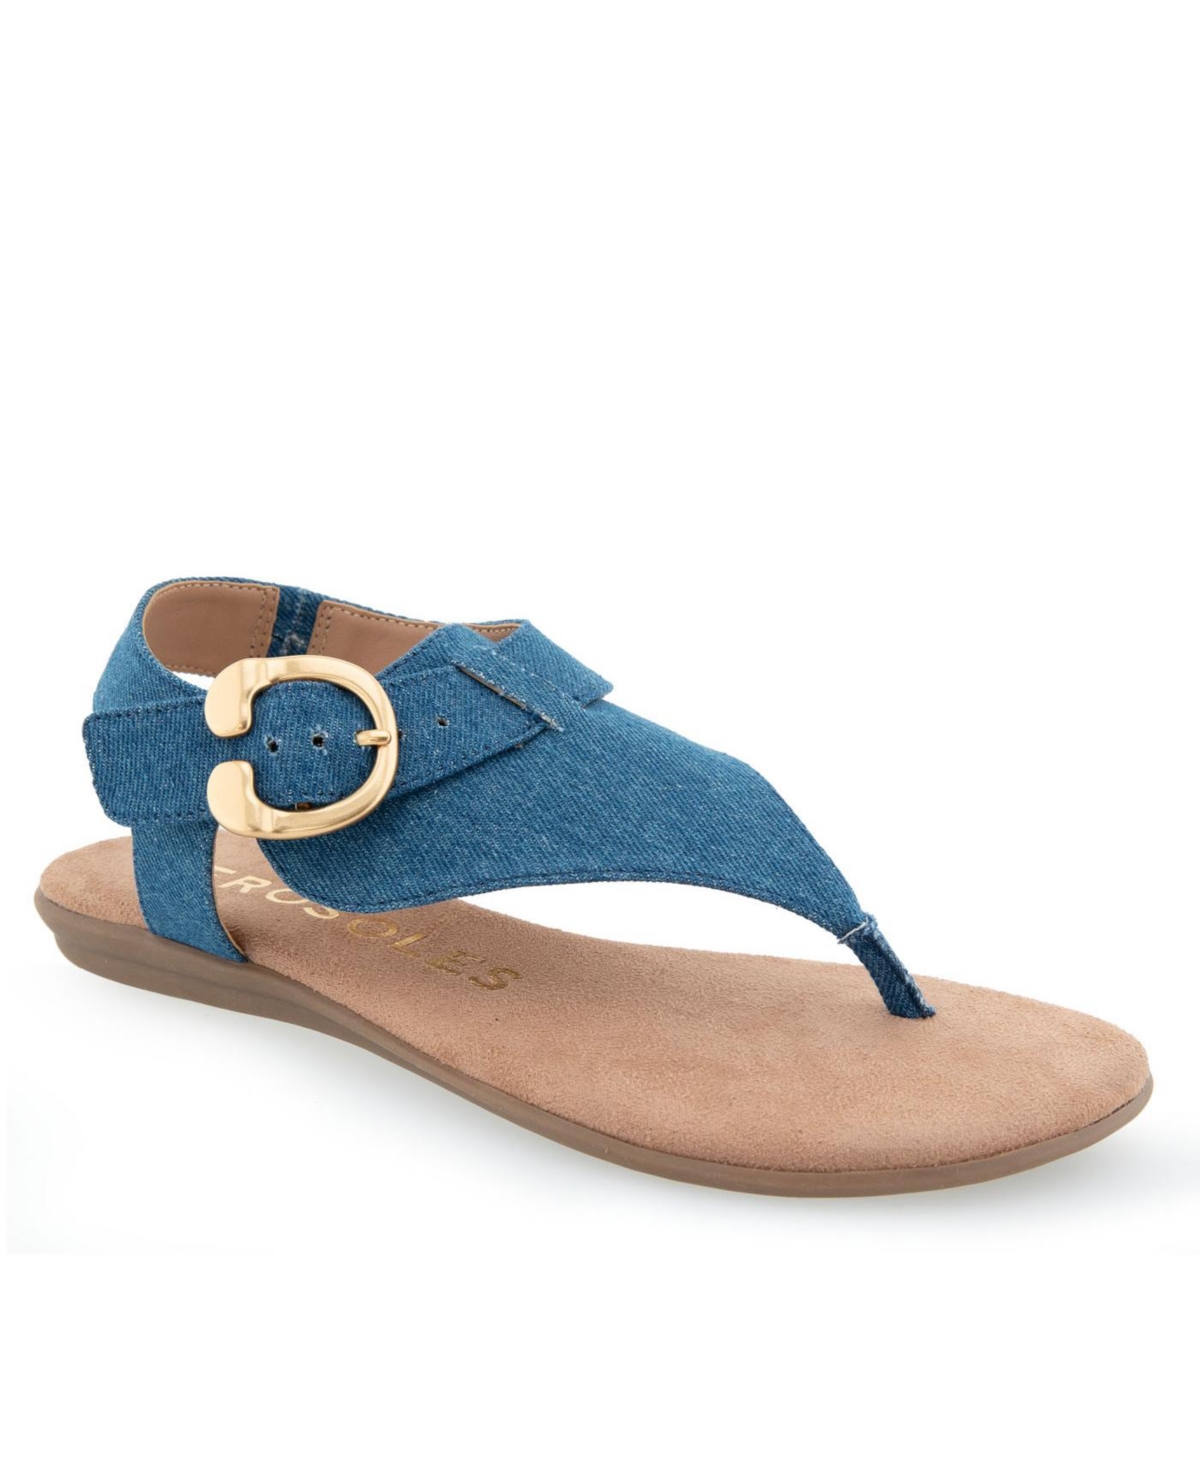 Shop Aerosoles Women's Isa Flat Sandals In Medium Blue Denim